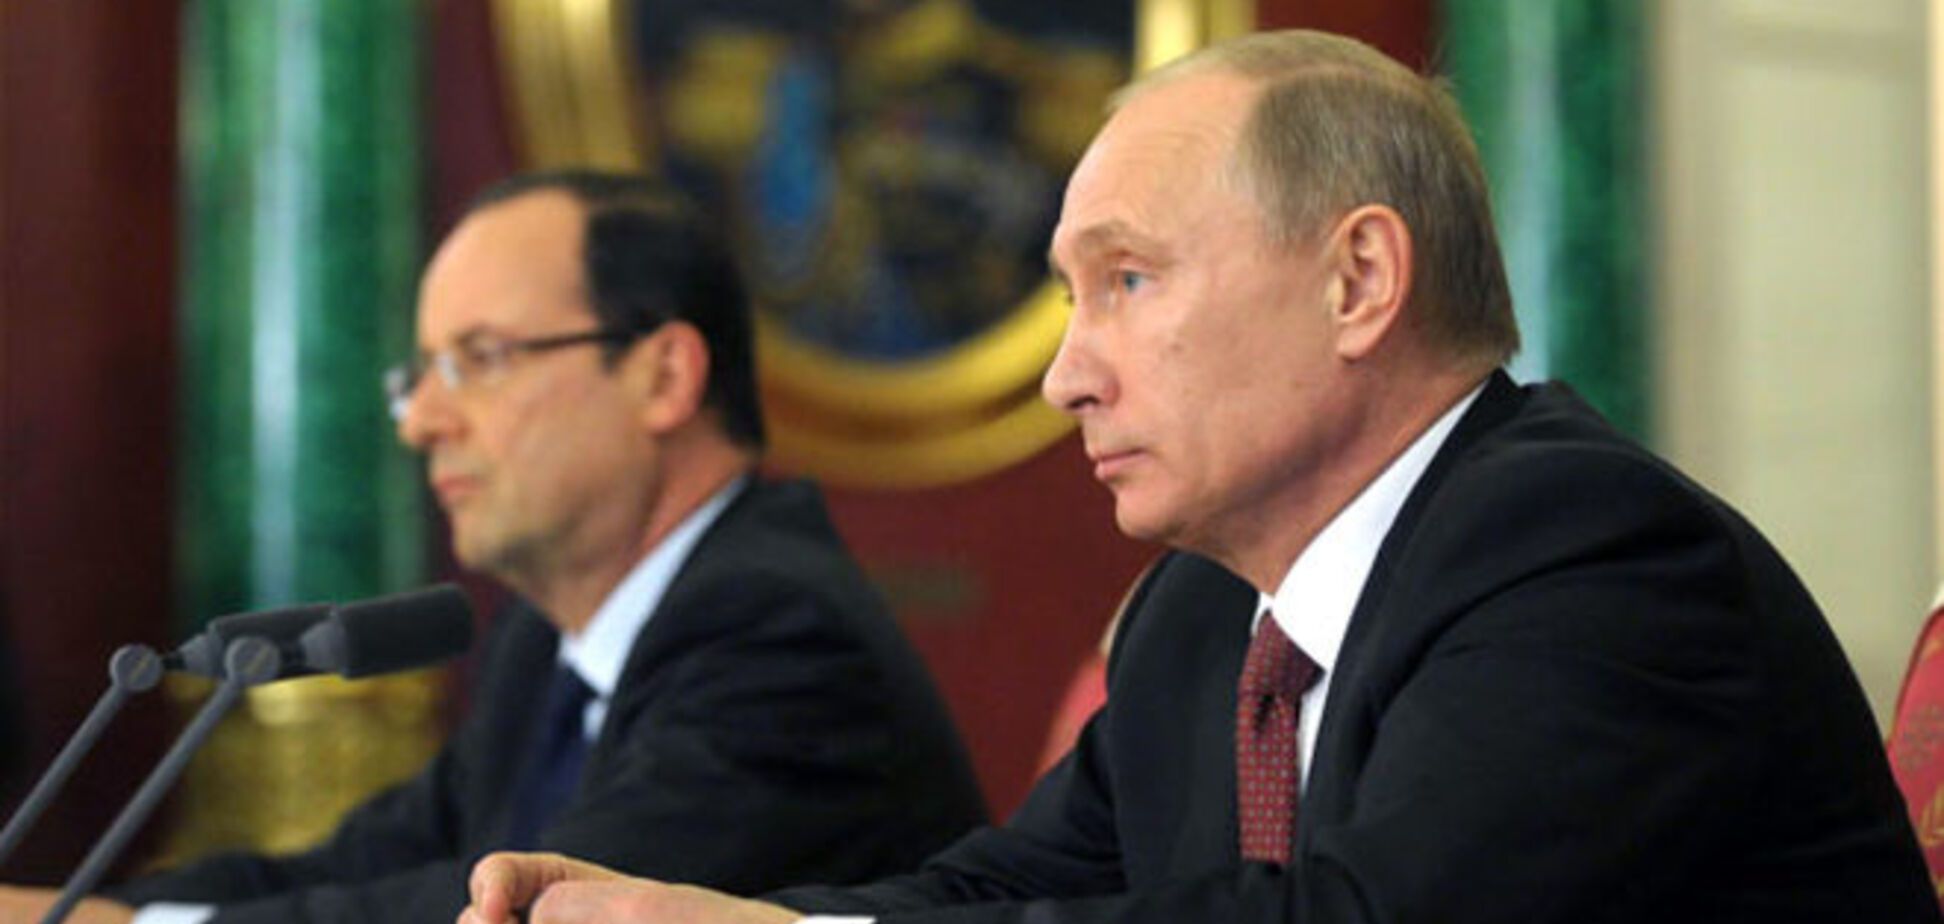 Олланд втайне готовил встречу с Путиным, но помог Назарбаев - СМИ